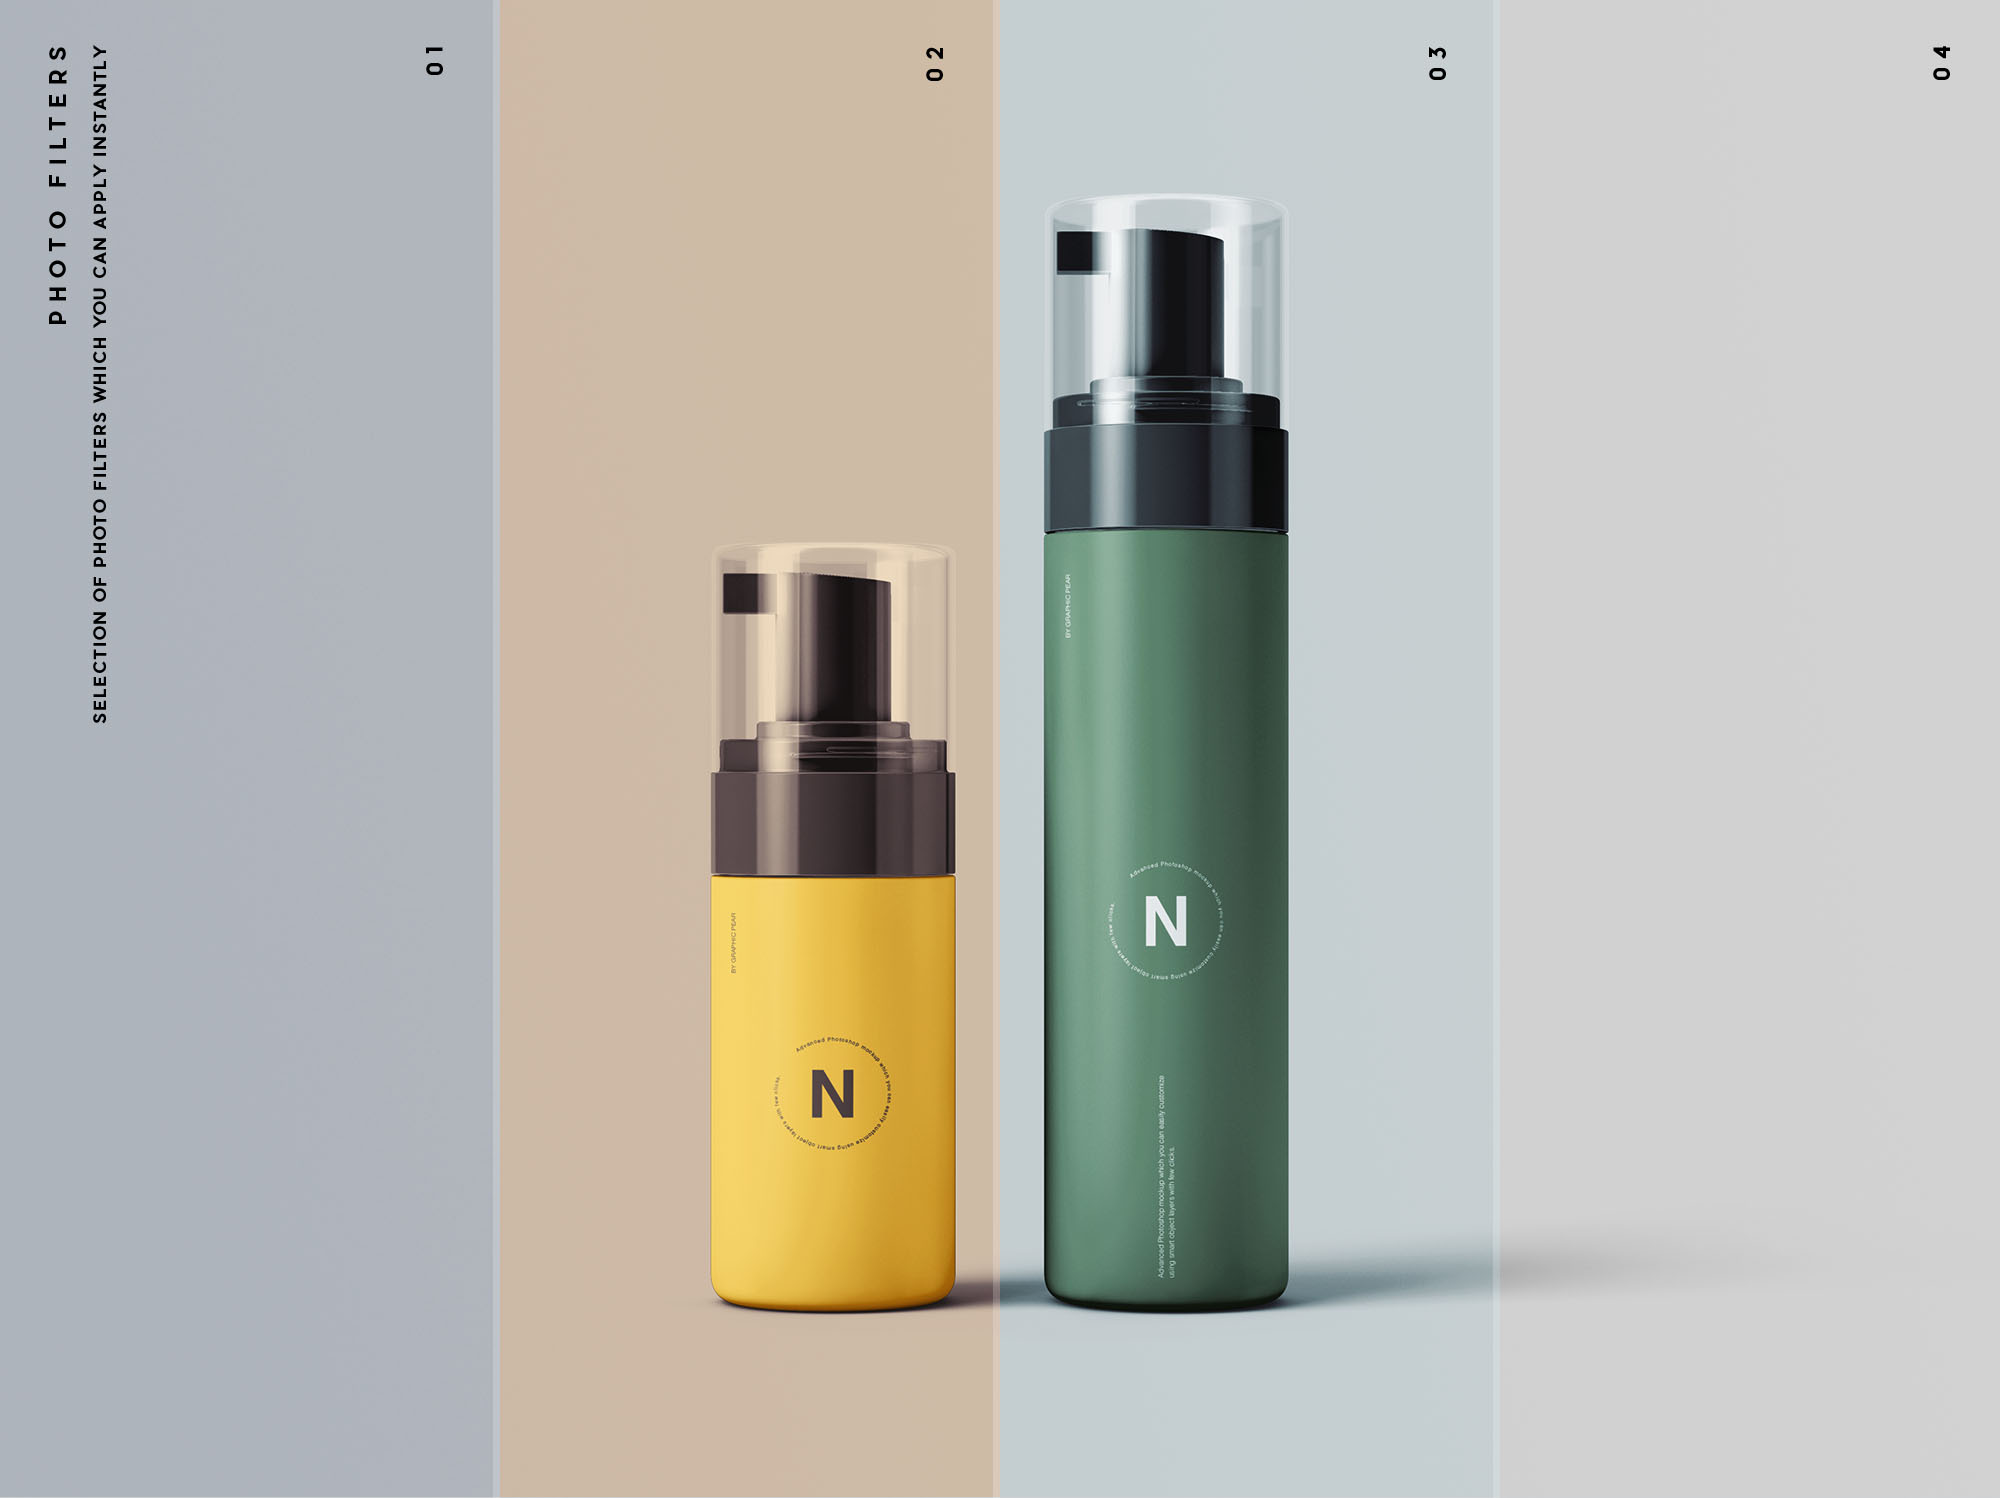 按压式化妆品护肤品瓶外观设计蚂蚁素材精选模板 Cosmetic Bottles Packaging Mockup插图(10)